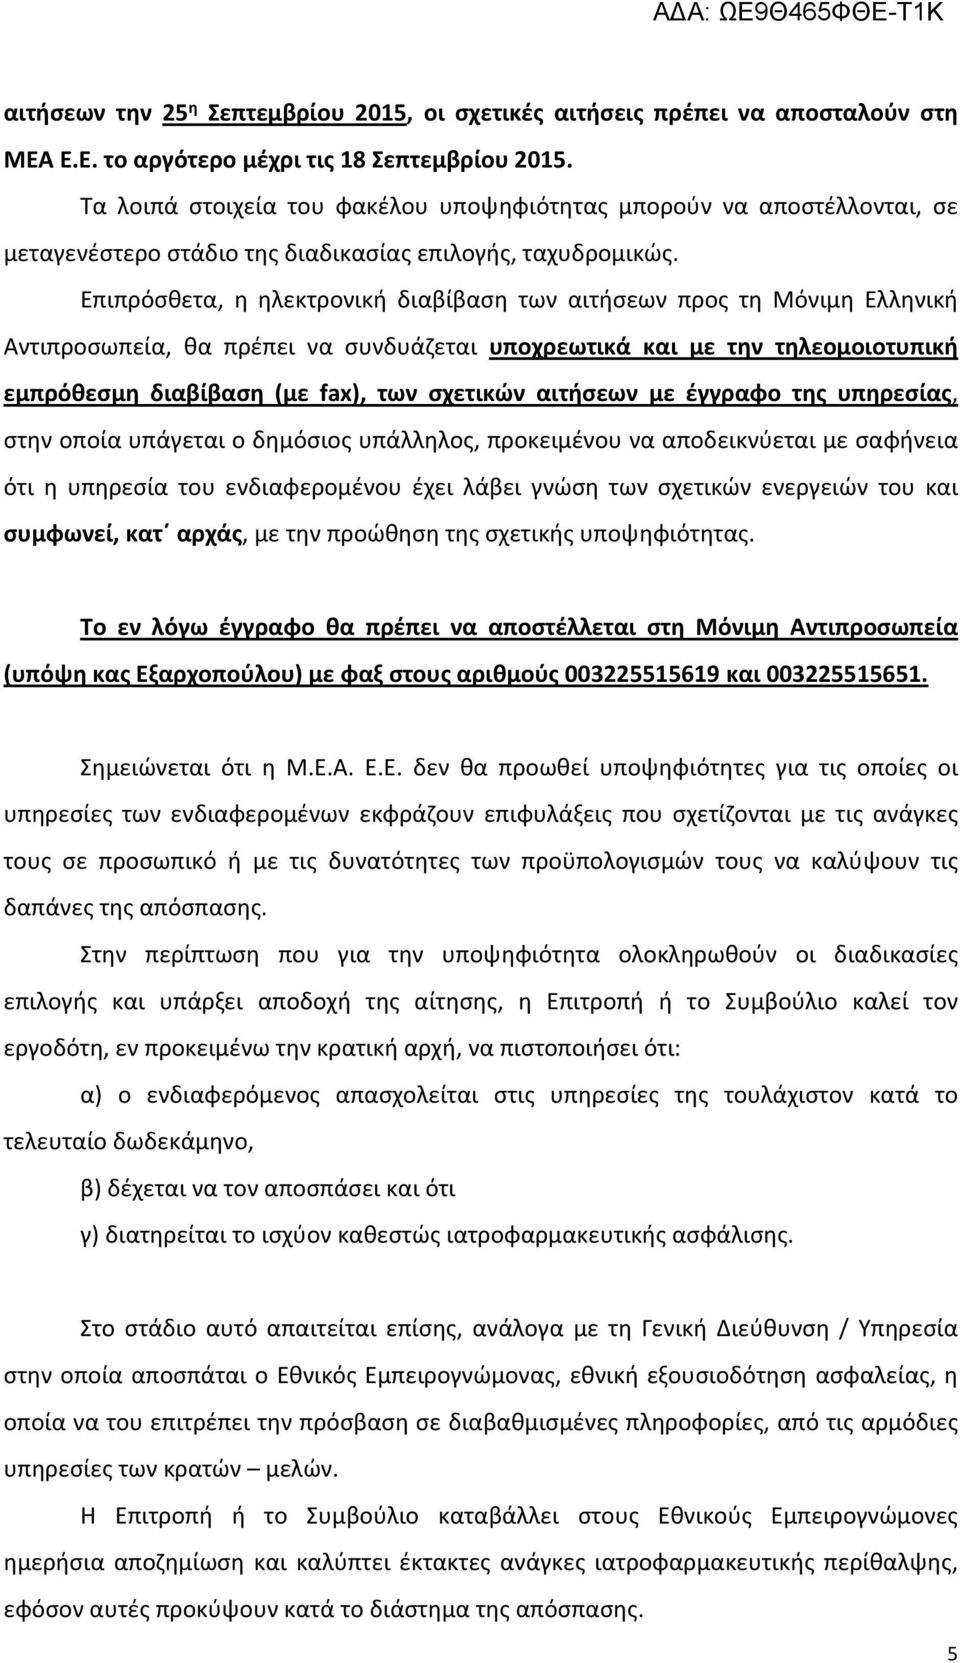 Επιπρόσθετα, η ηλεκτρονική διαβίβαση των αιτήσεων προς τη Μόνιμη Ελληνική Αντιπροσωπεία, θα πρέπει να συνδυάζεται υποχρεωτικά και με την τηλεομοιοτυπική εμπρόθεσμη διαβίβαση (με fax), των σχετικών